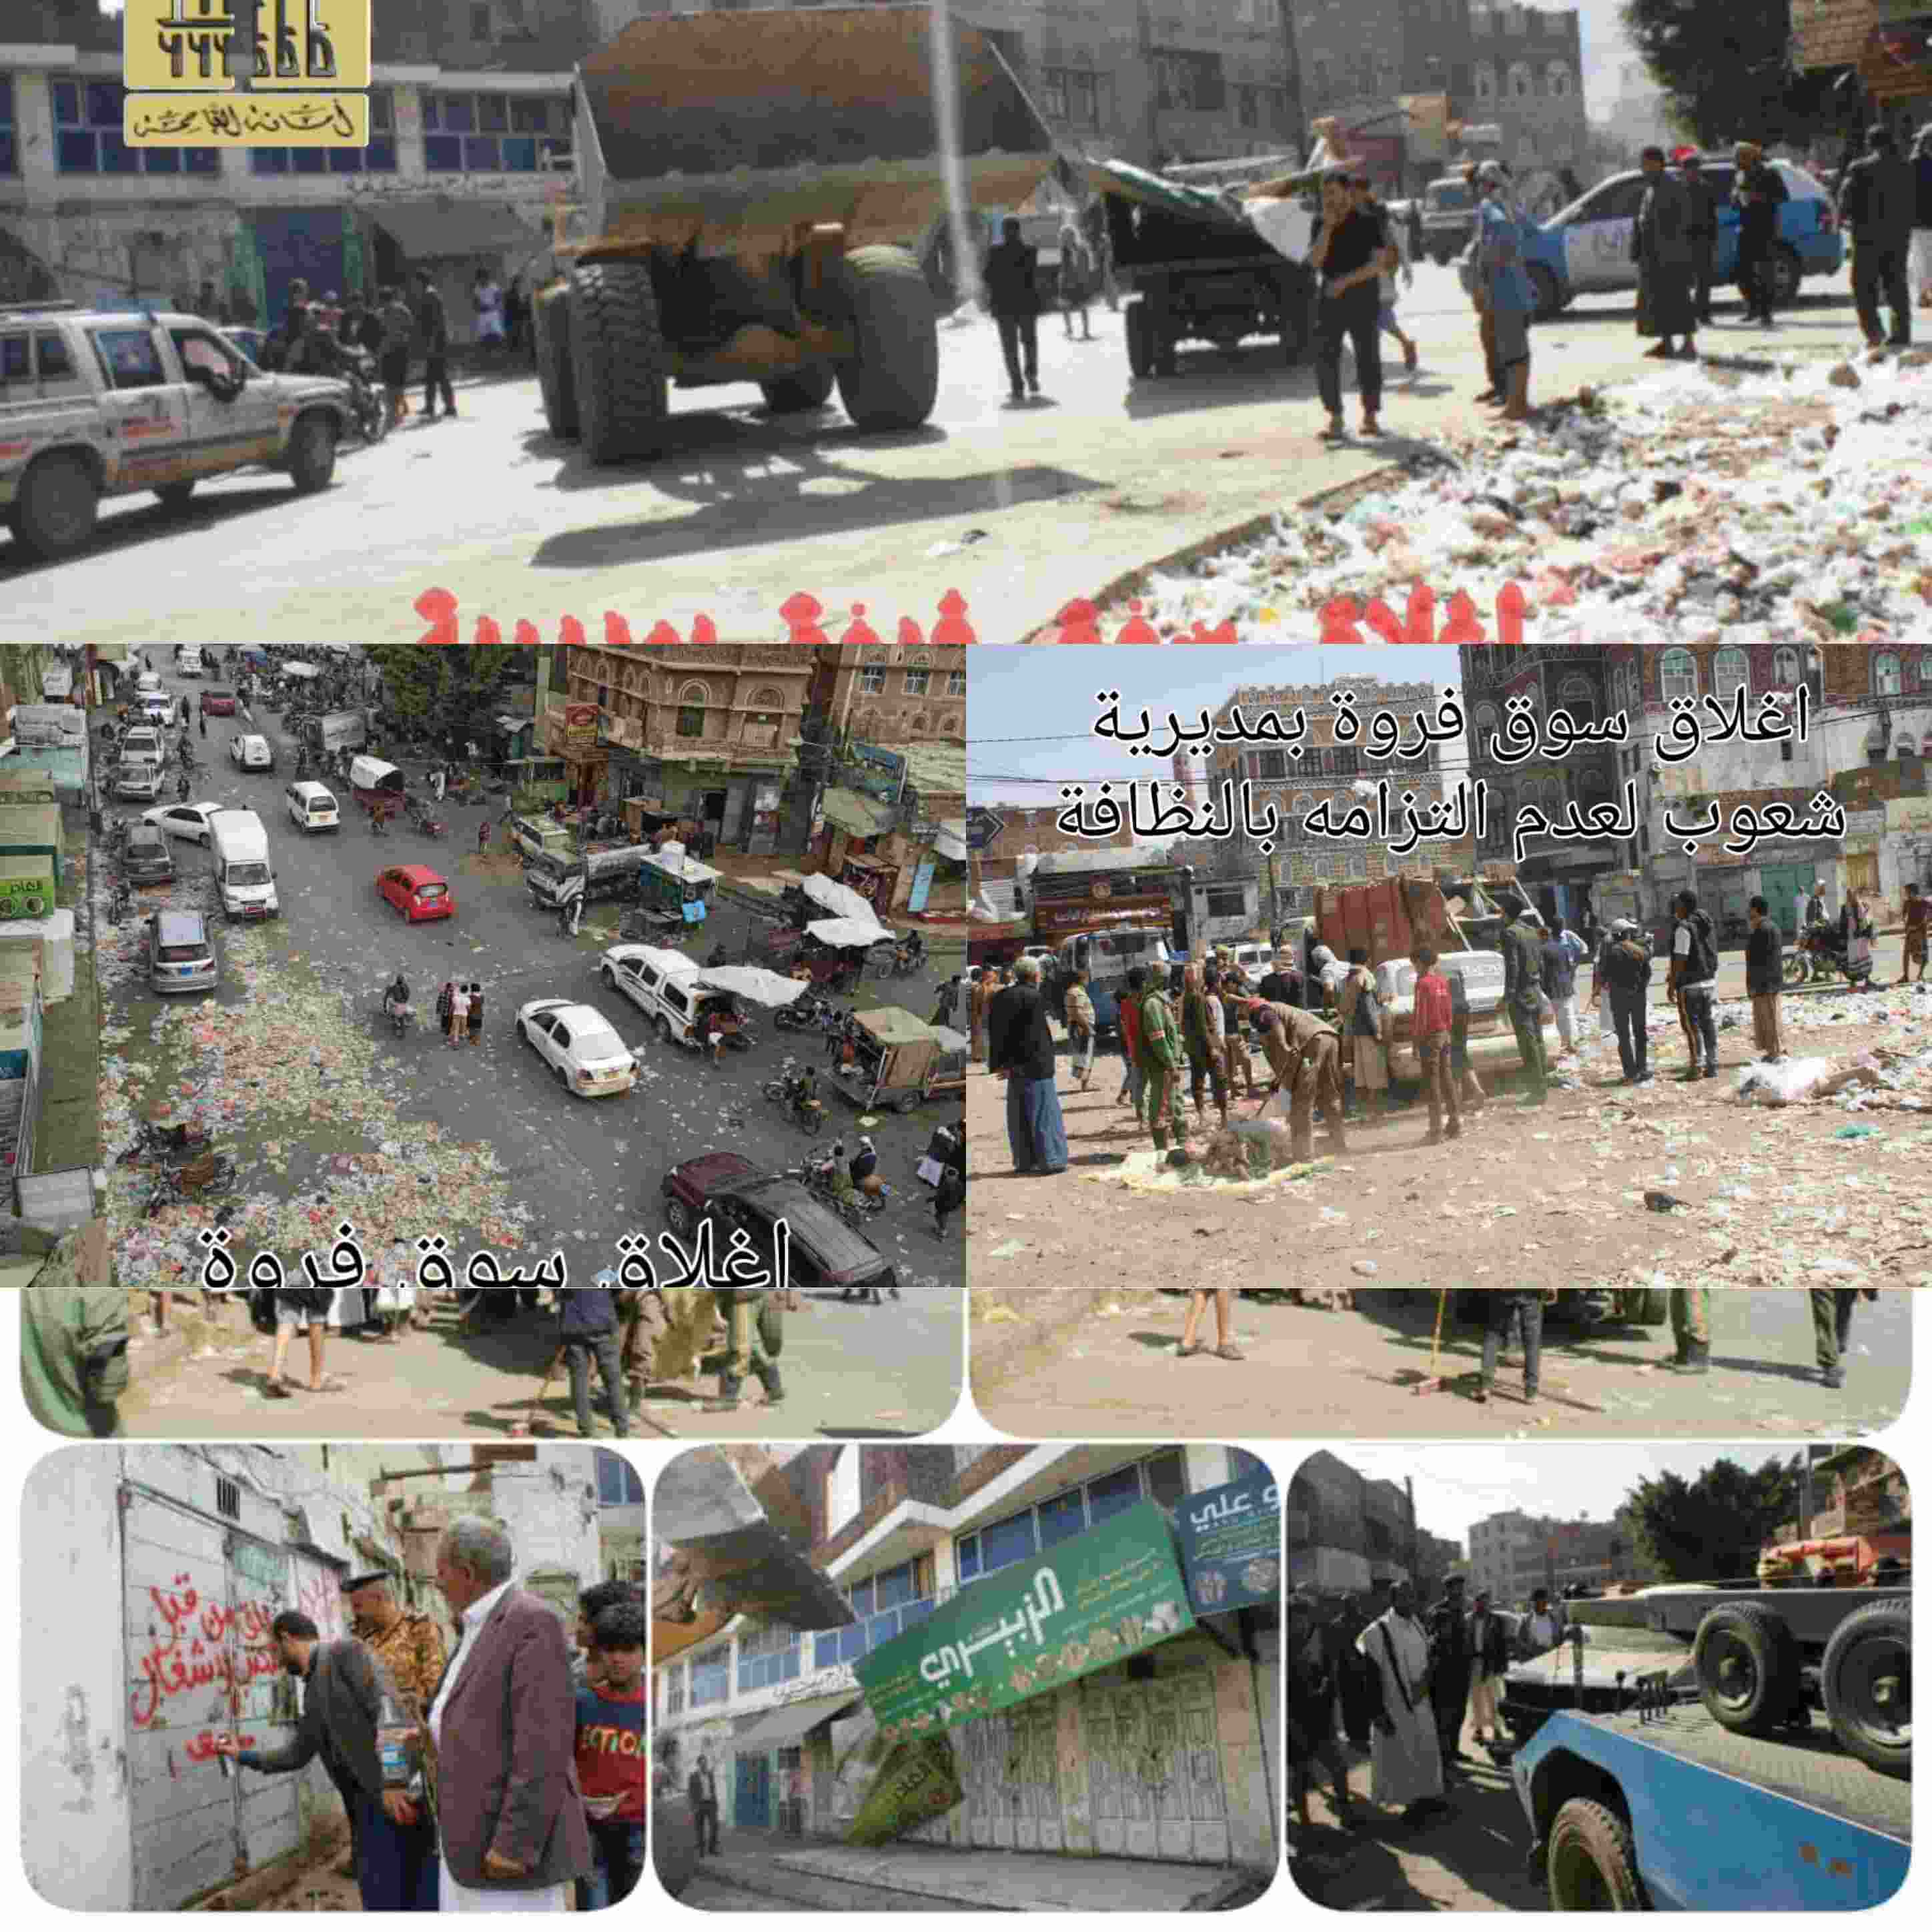 وكيل أمانة العاصمة صنعاء علي اللاحجي إغلاق سوق فروة بمديرية شعوب لعدم التزامه بالنظافة